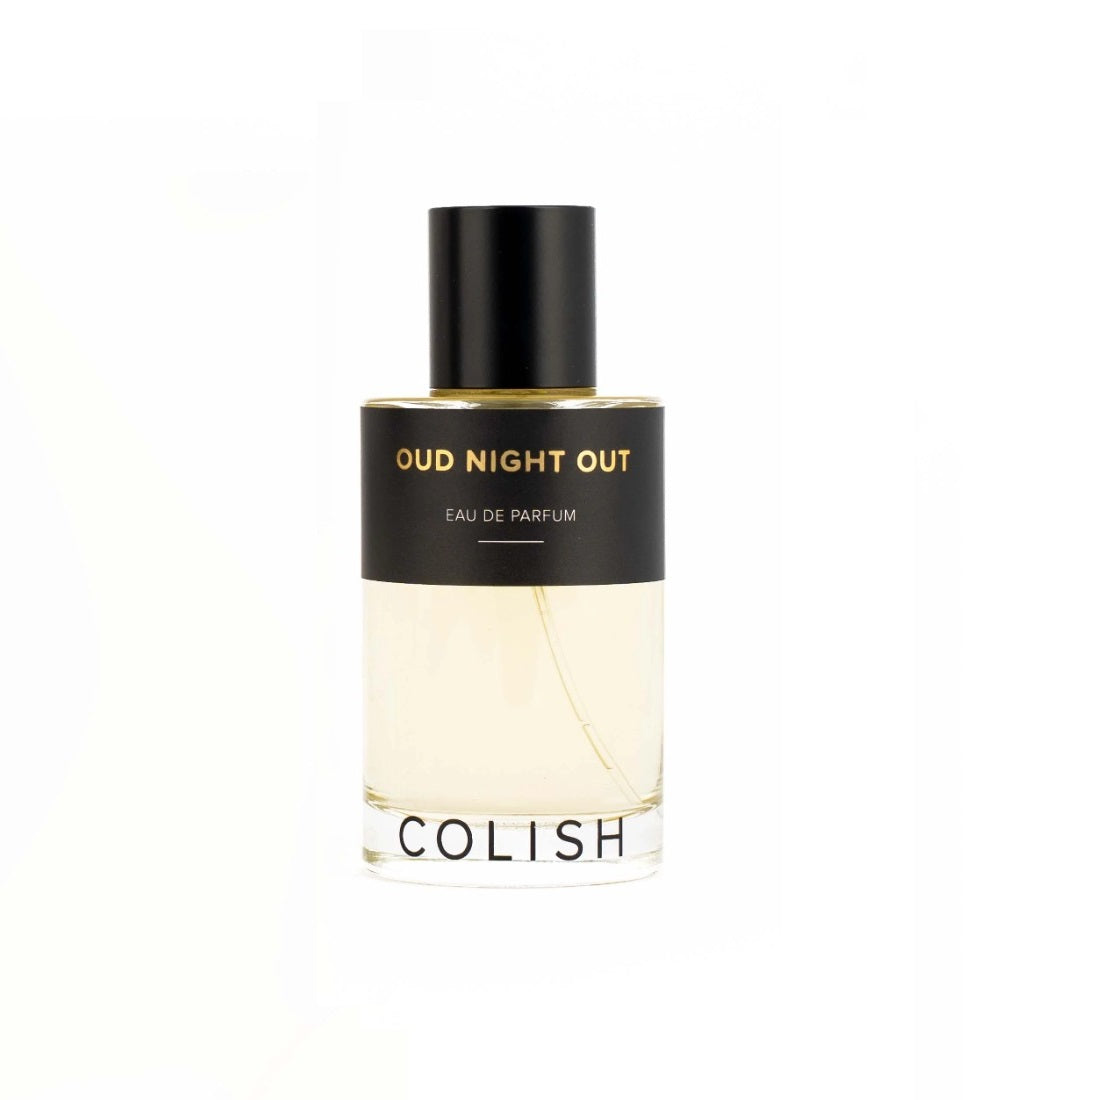 COLISH - Oud Night Out Eau De Parfum - 100ml